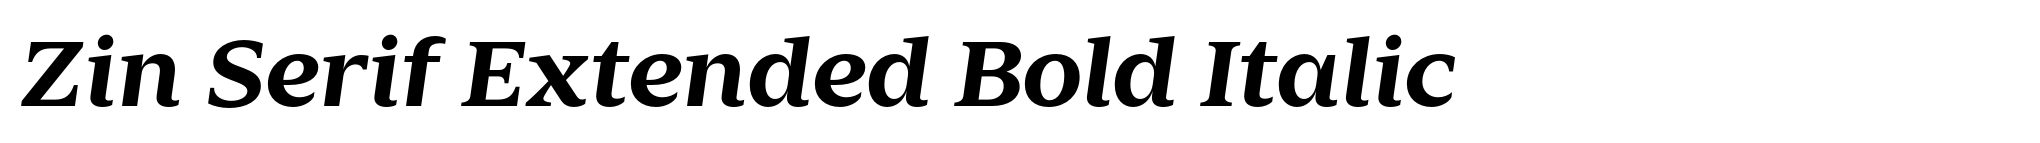 Zin Serif Extended Bold Italic image